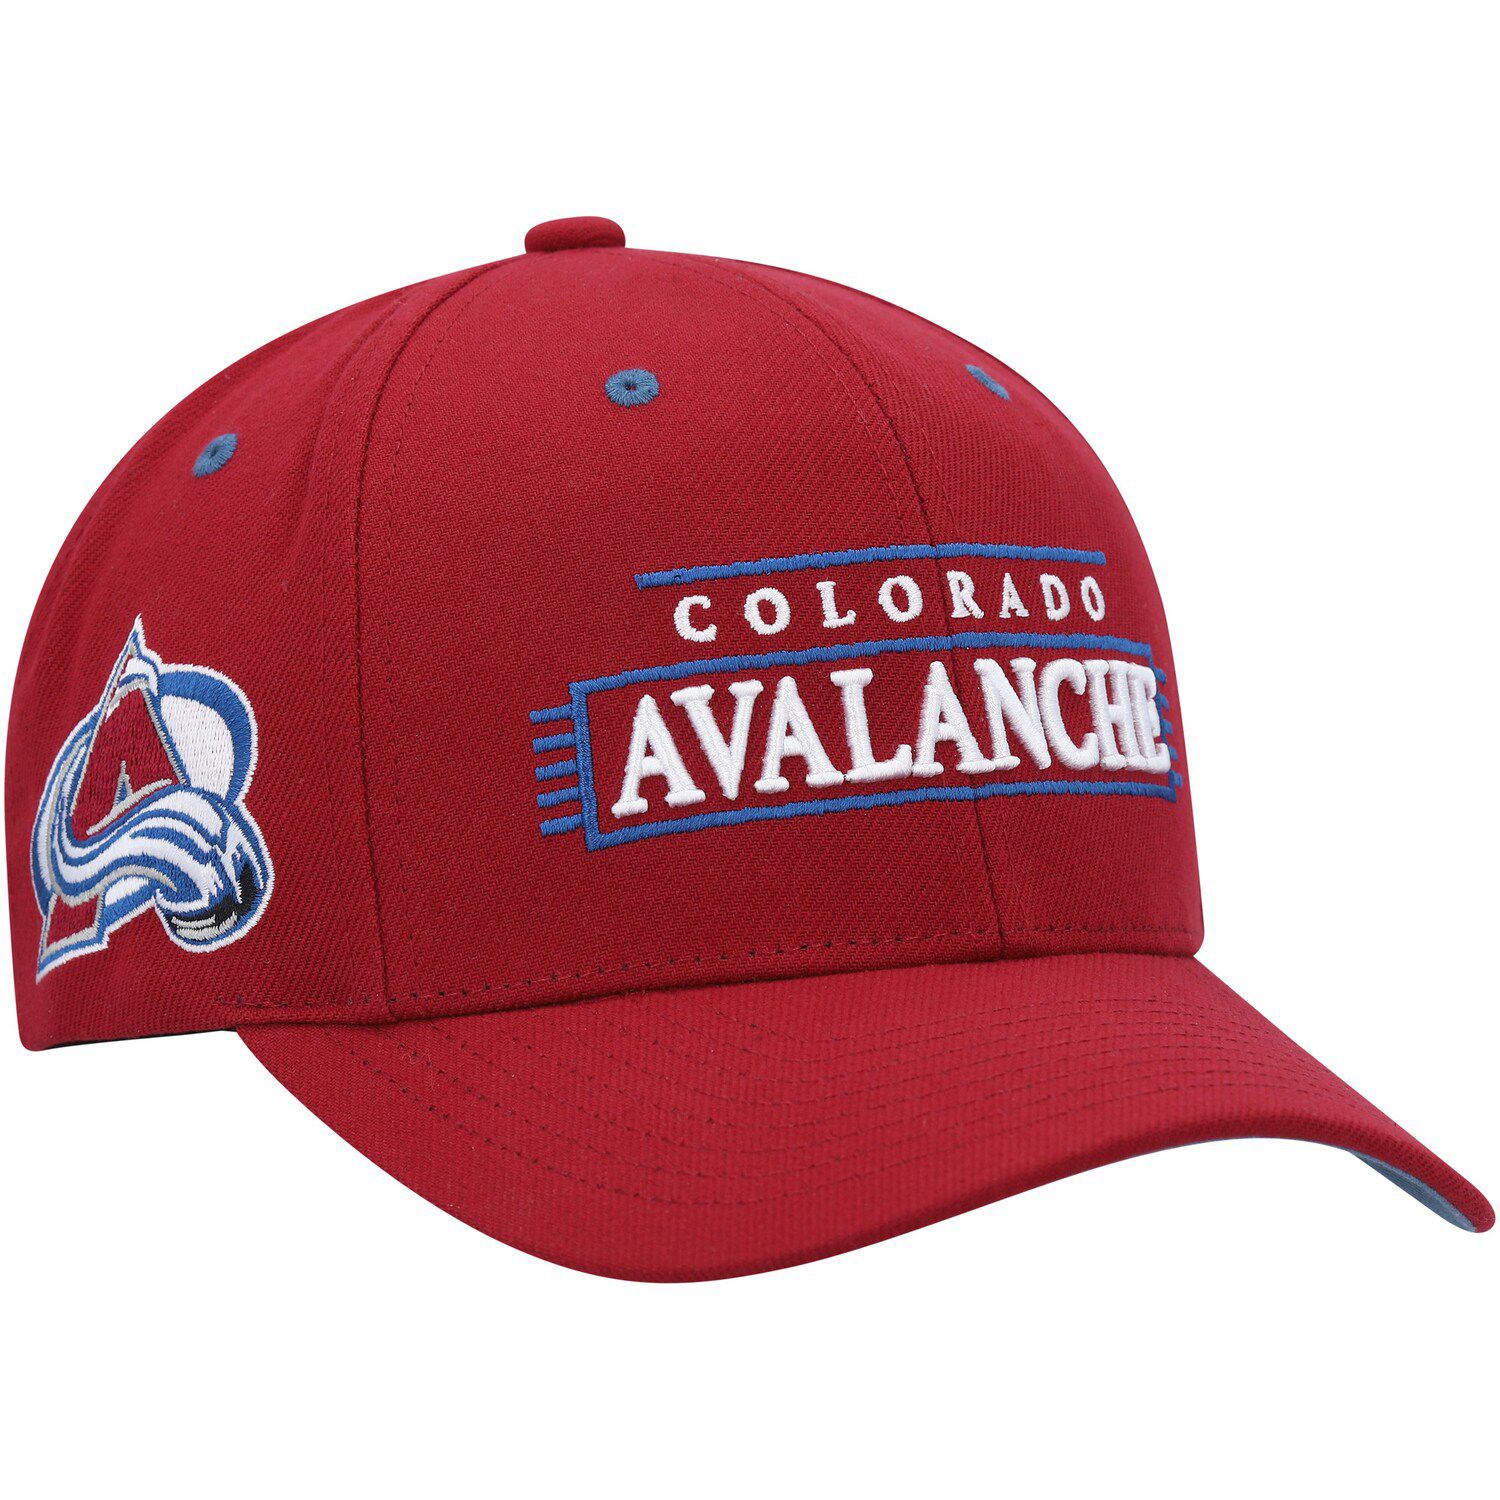 New White Fanatics Colorado Avalanche Hockey Fights Cancer Snapback Hat